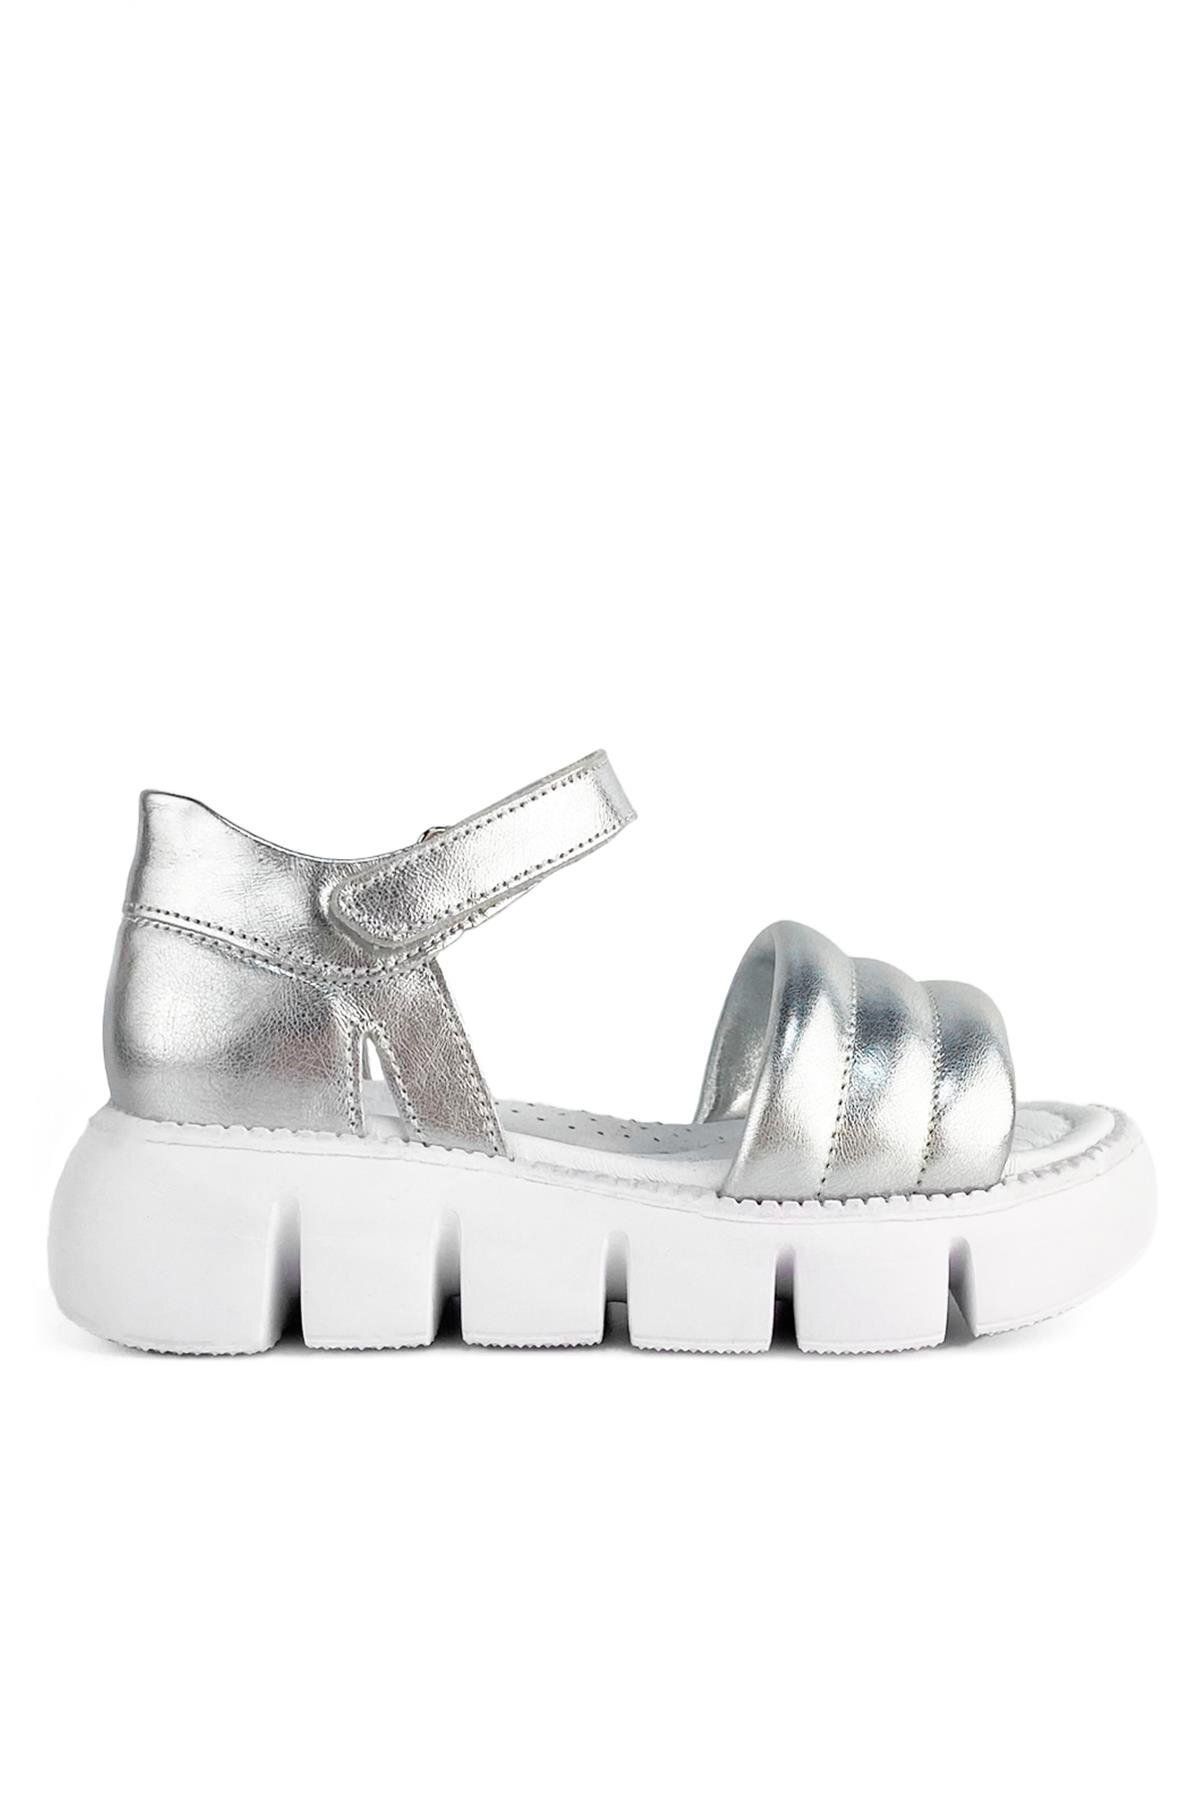 Cici Bebe Ayakkabı Hakiki Deri Gümüş Kız Çocuk Sandalet